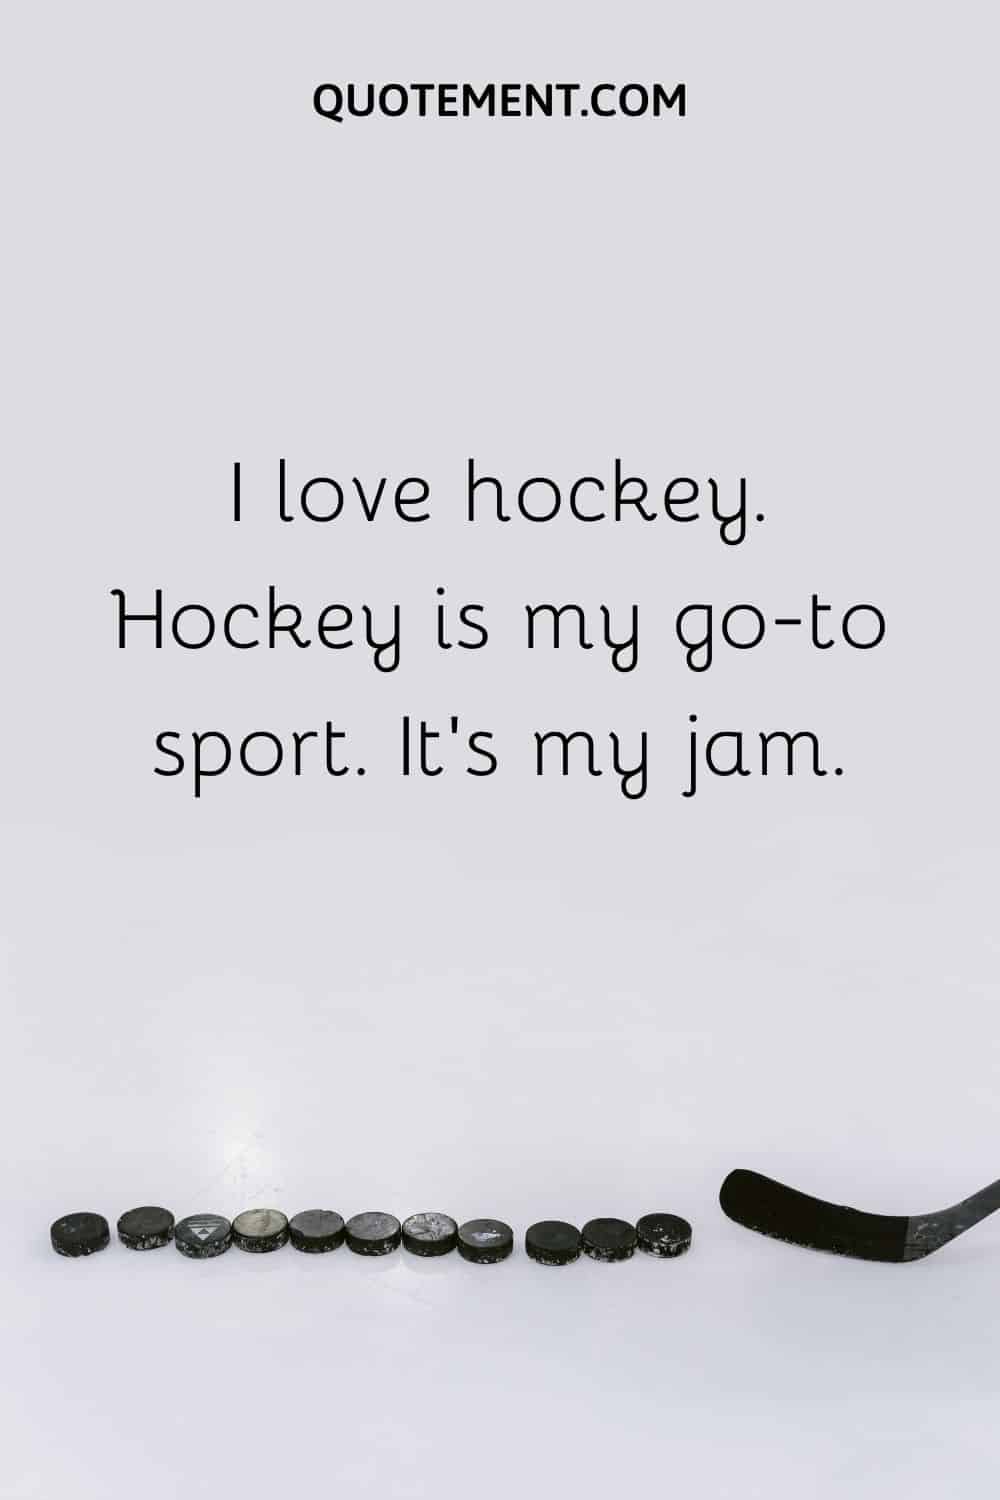 I love hockey. Hockey is my go-to sport. It’s my jam.